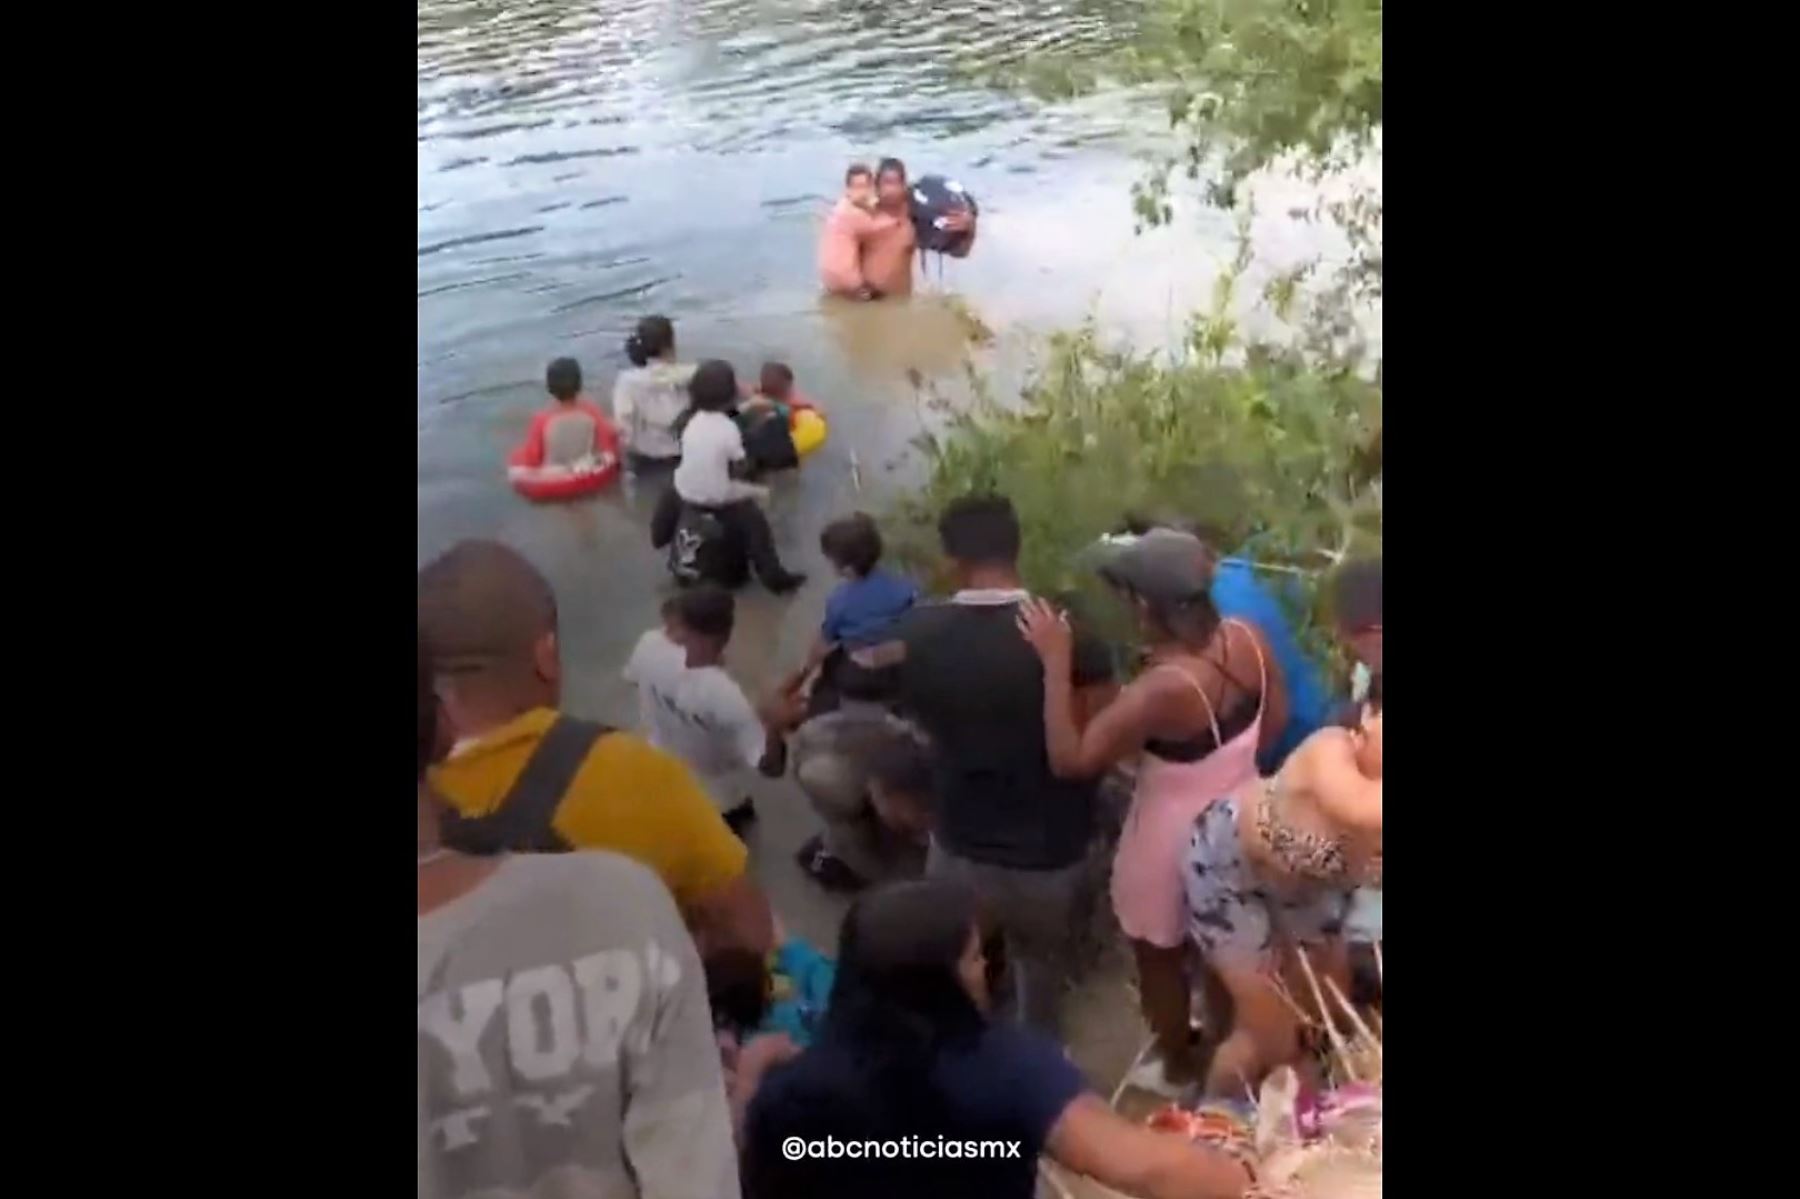 Migrantes intentan cruzar el río Bravo para ingresar en territorio de Estados Unidos. Imagen: Captura de video / ABCNoticias.mx / Twitter.